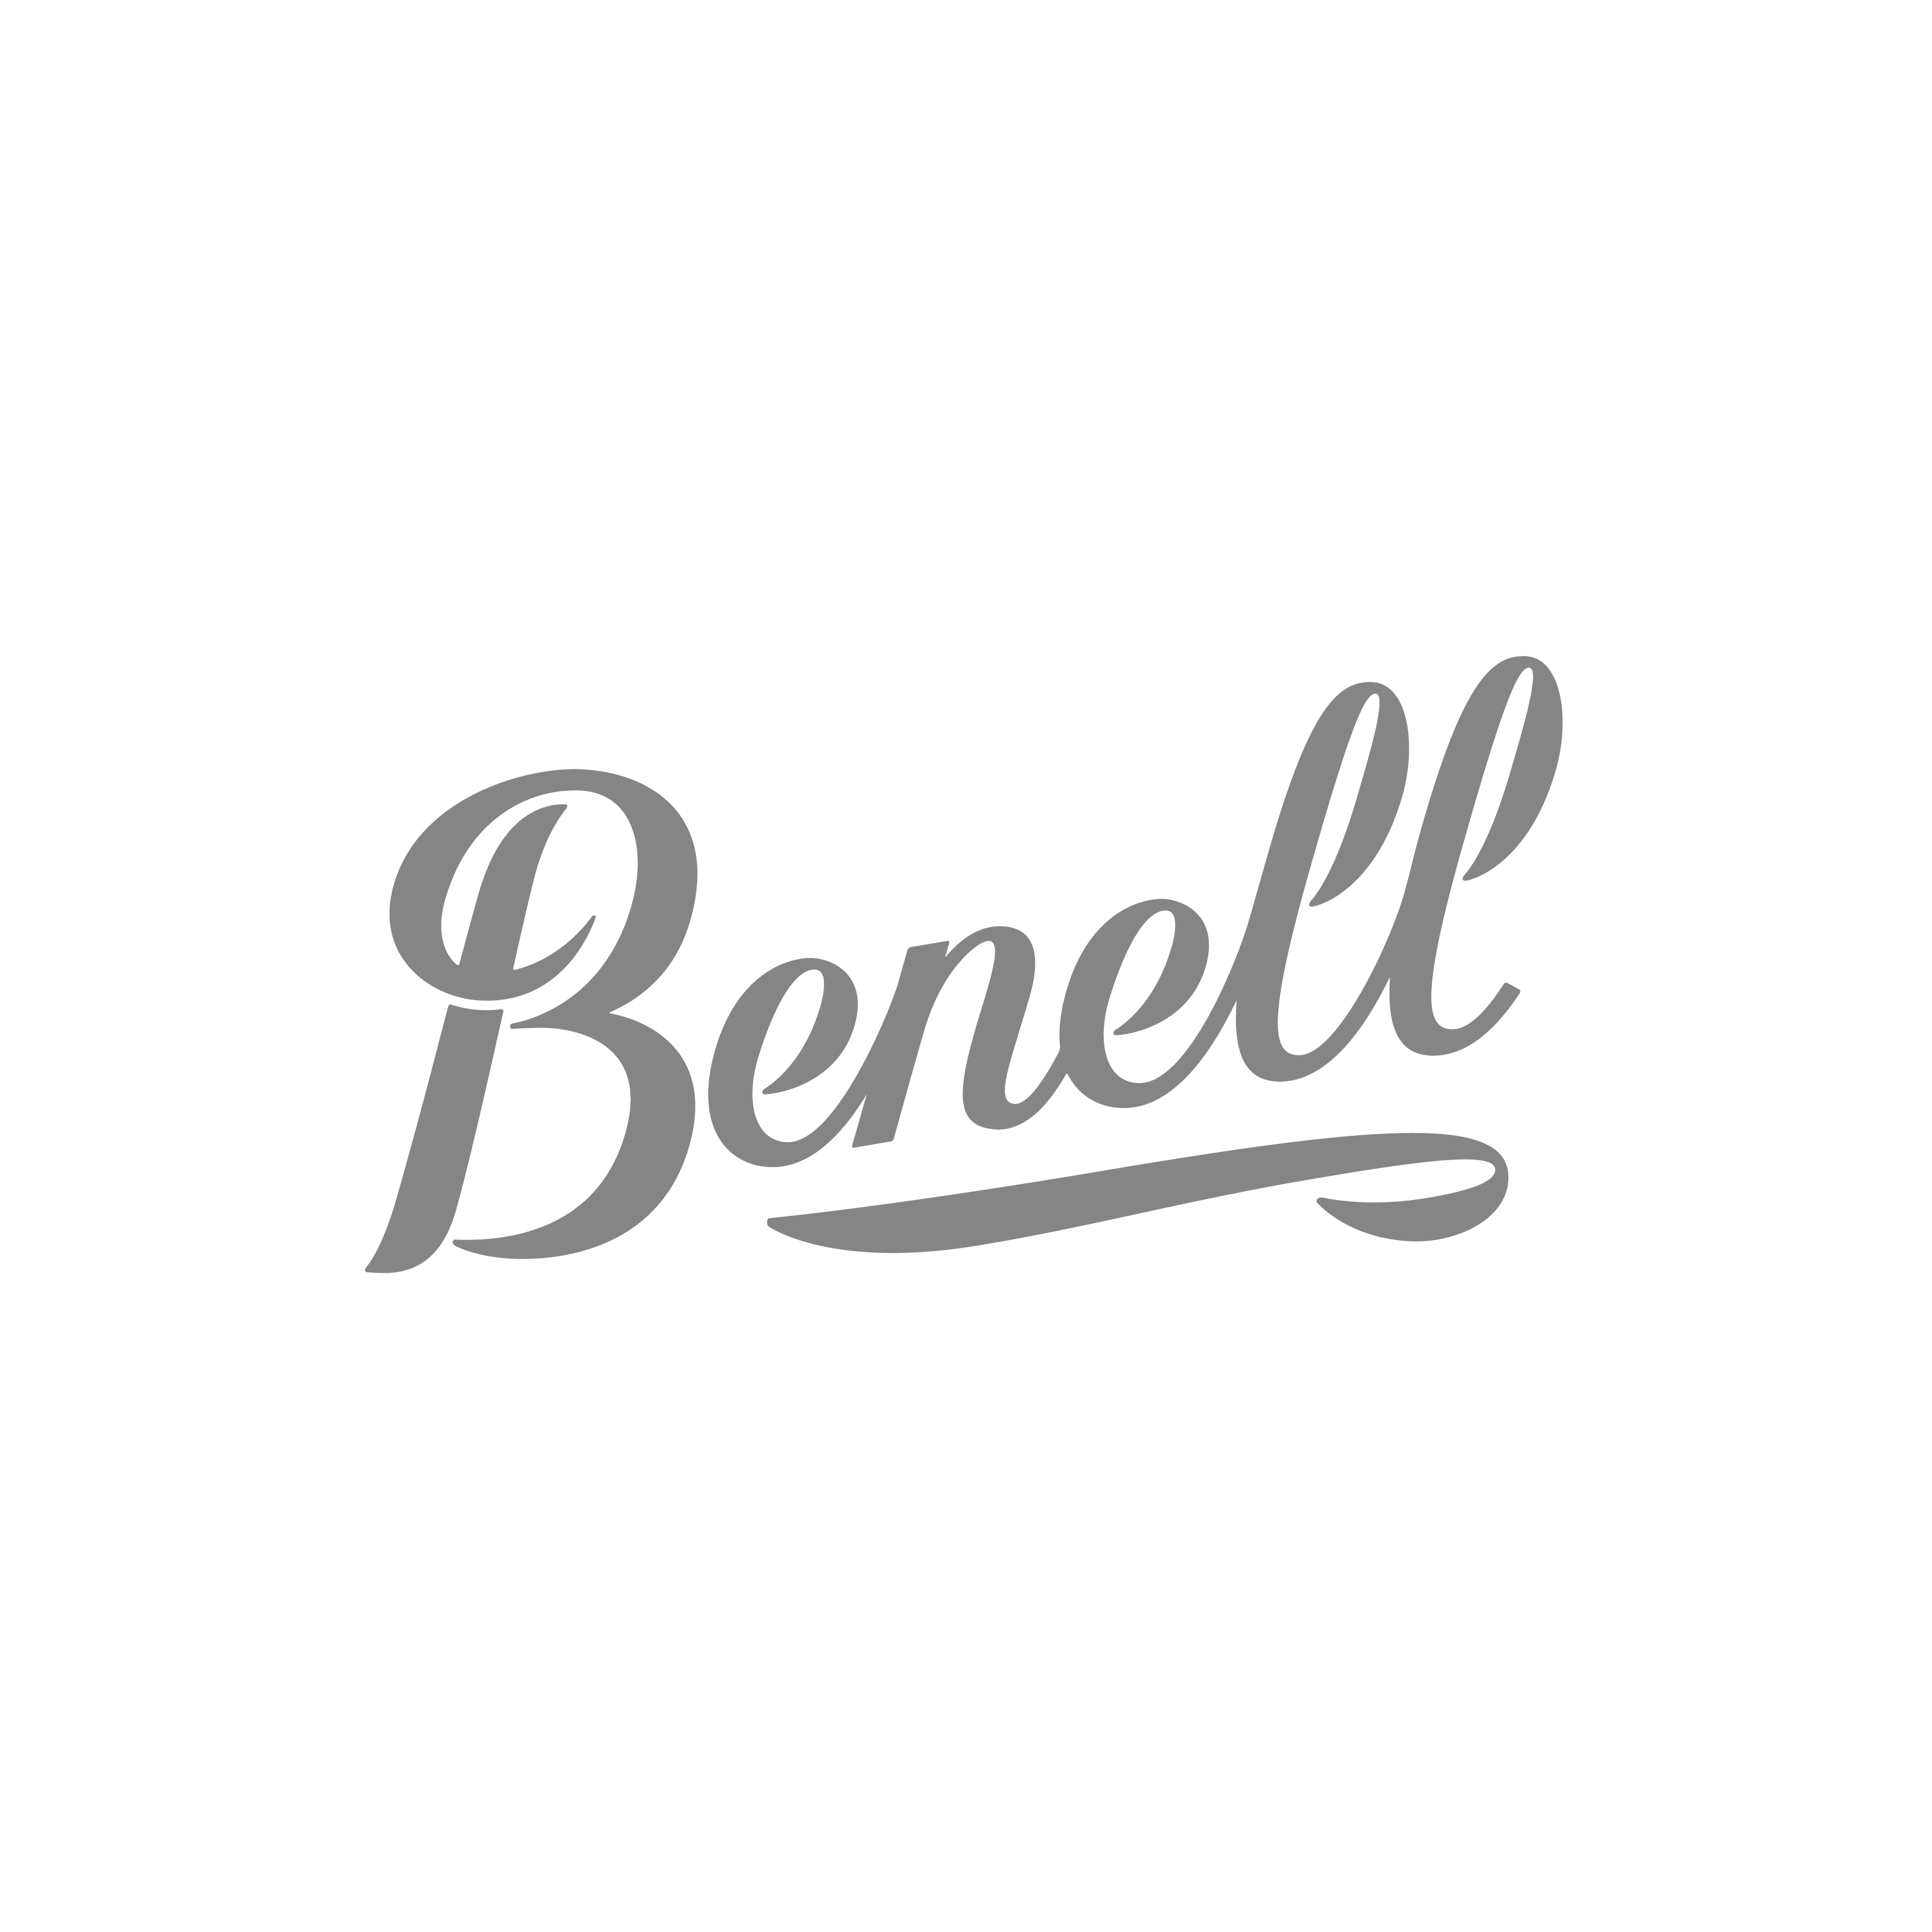 Logos jean agencia de publicidad y marketing Benell